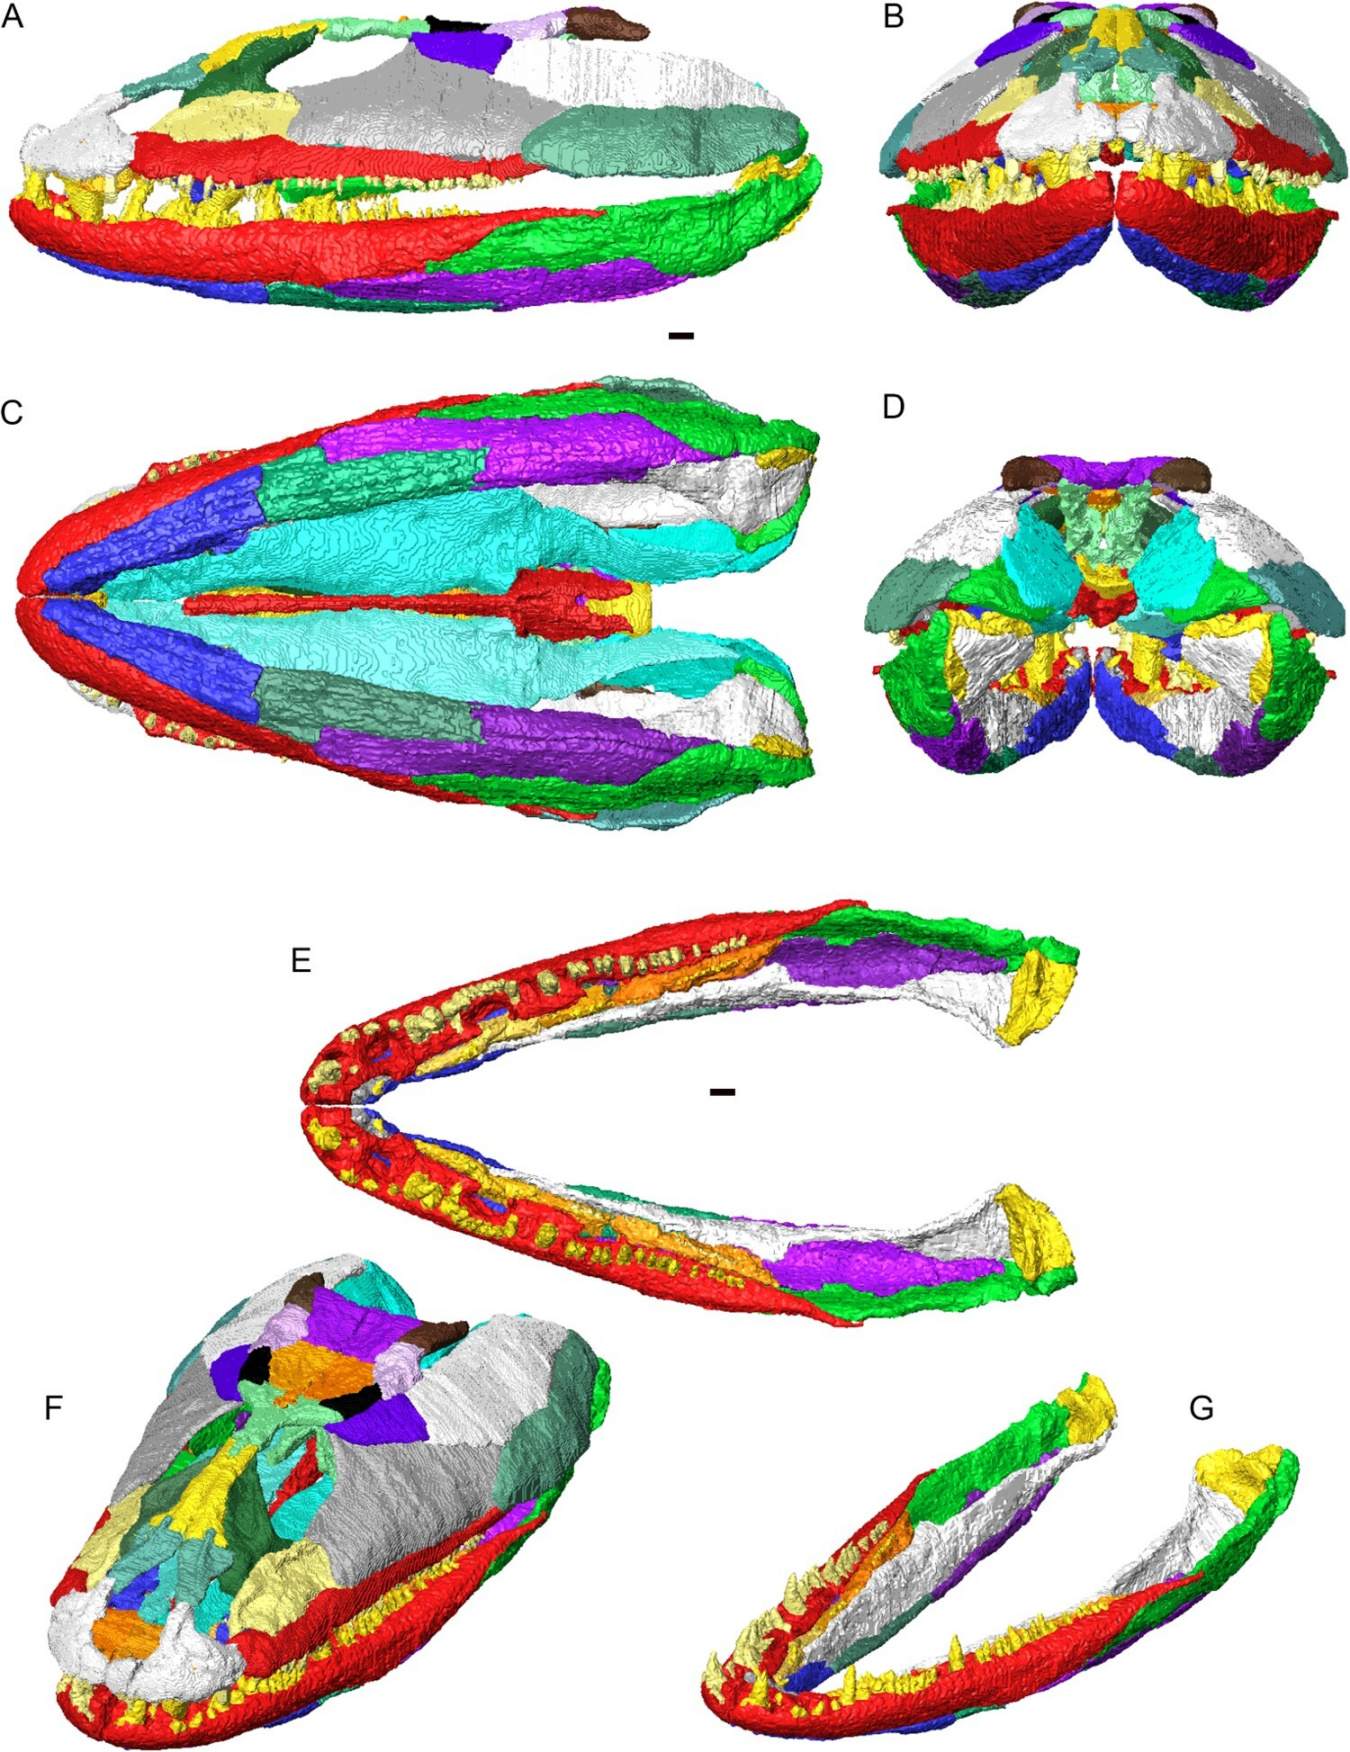 3D Crassigyrinus scoticus kaukolės ir apatinių žandikaulių rekonstrukcija artikuliacijoje. Atskiri kaulai rodomi skirtingomis spalvomis. A, vaizdas iš kairės pusės; B, vaizdas iš priekio; C, ventralinis vaizdas; D, vaizdas iš galo; E, sulenkti apatiniai žandikauliai (be kaukolės) nugarinėje dalyje; F, kaukolė ir apatinis žandikaulis dorsolateriniame įstrižai; G, sulenkti apatiniai žandikauliai dorsolateriniame įstrižai.